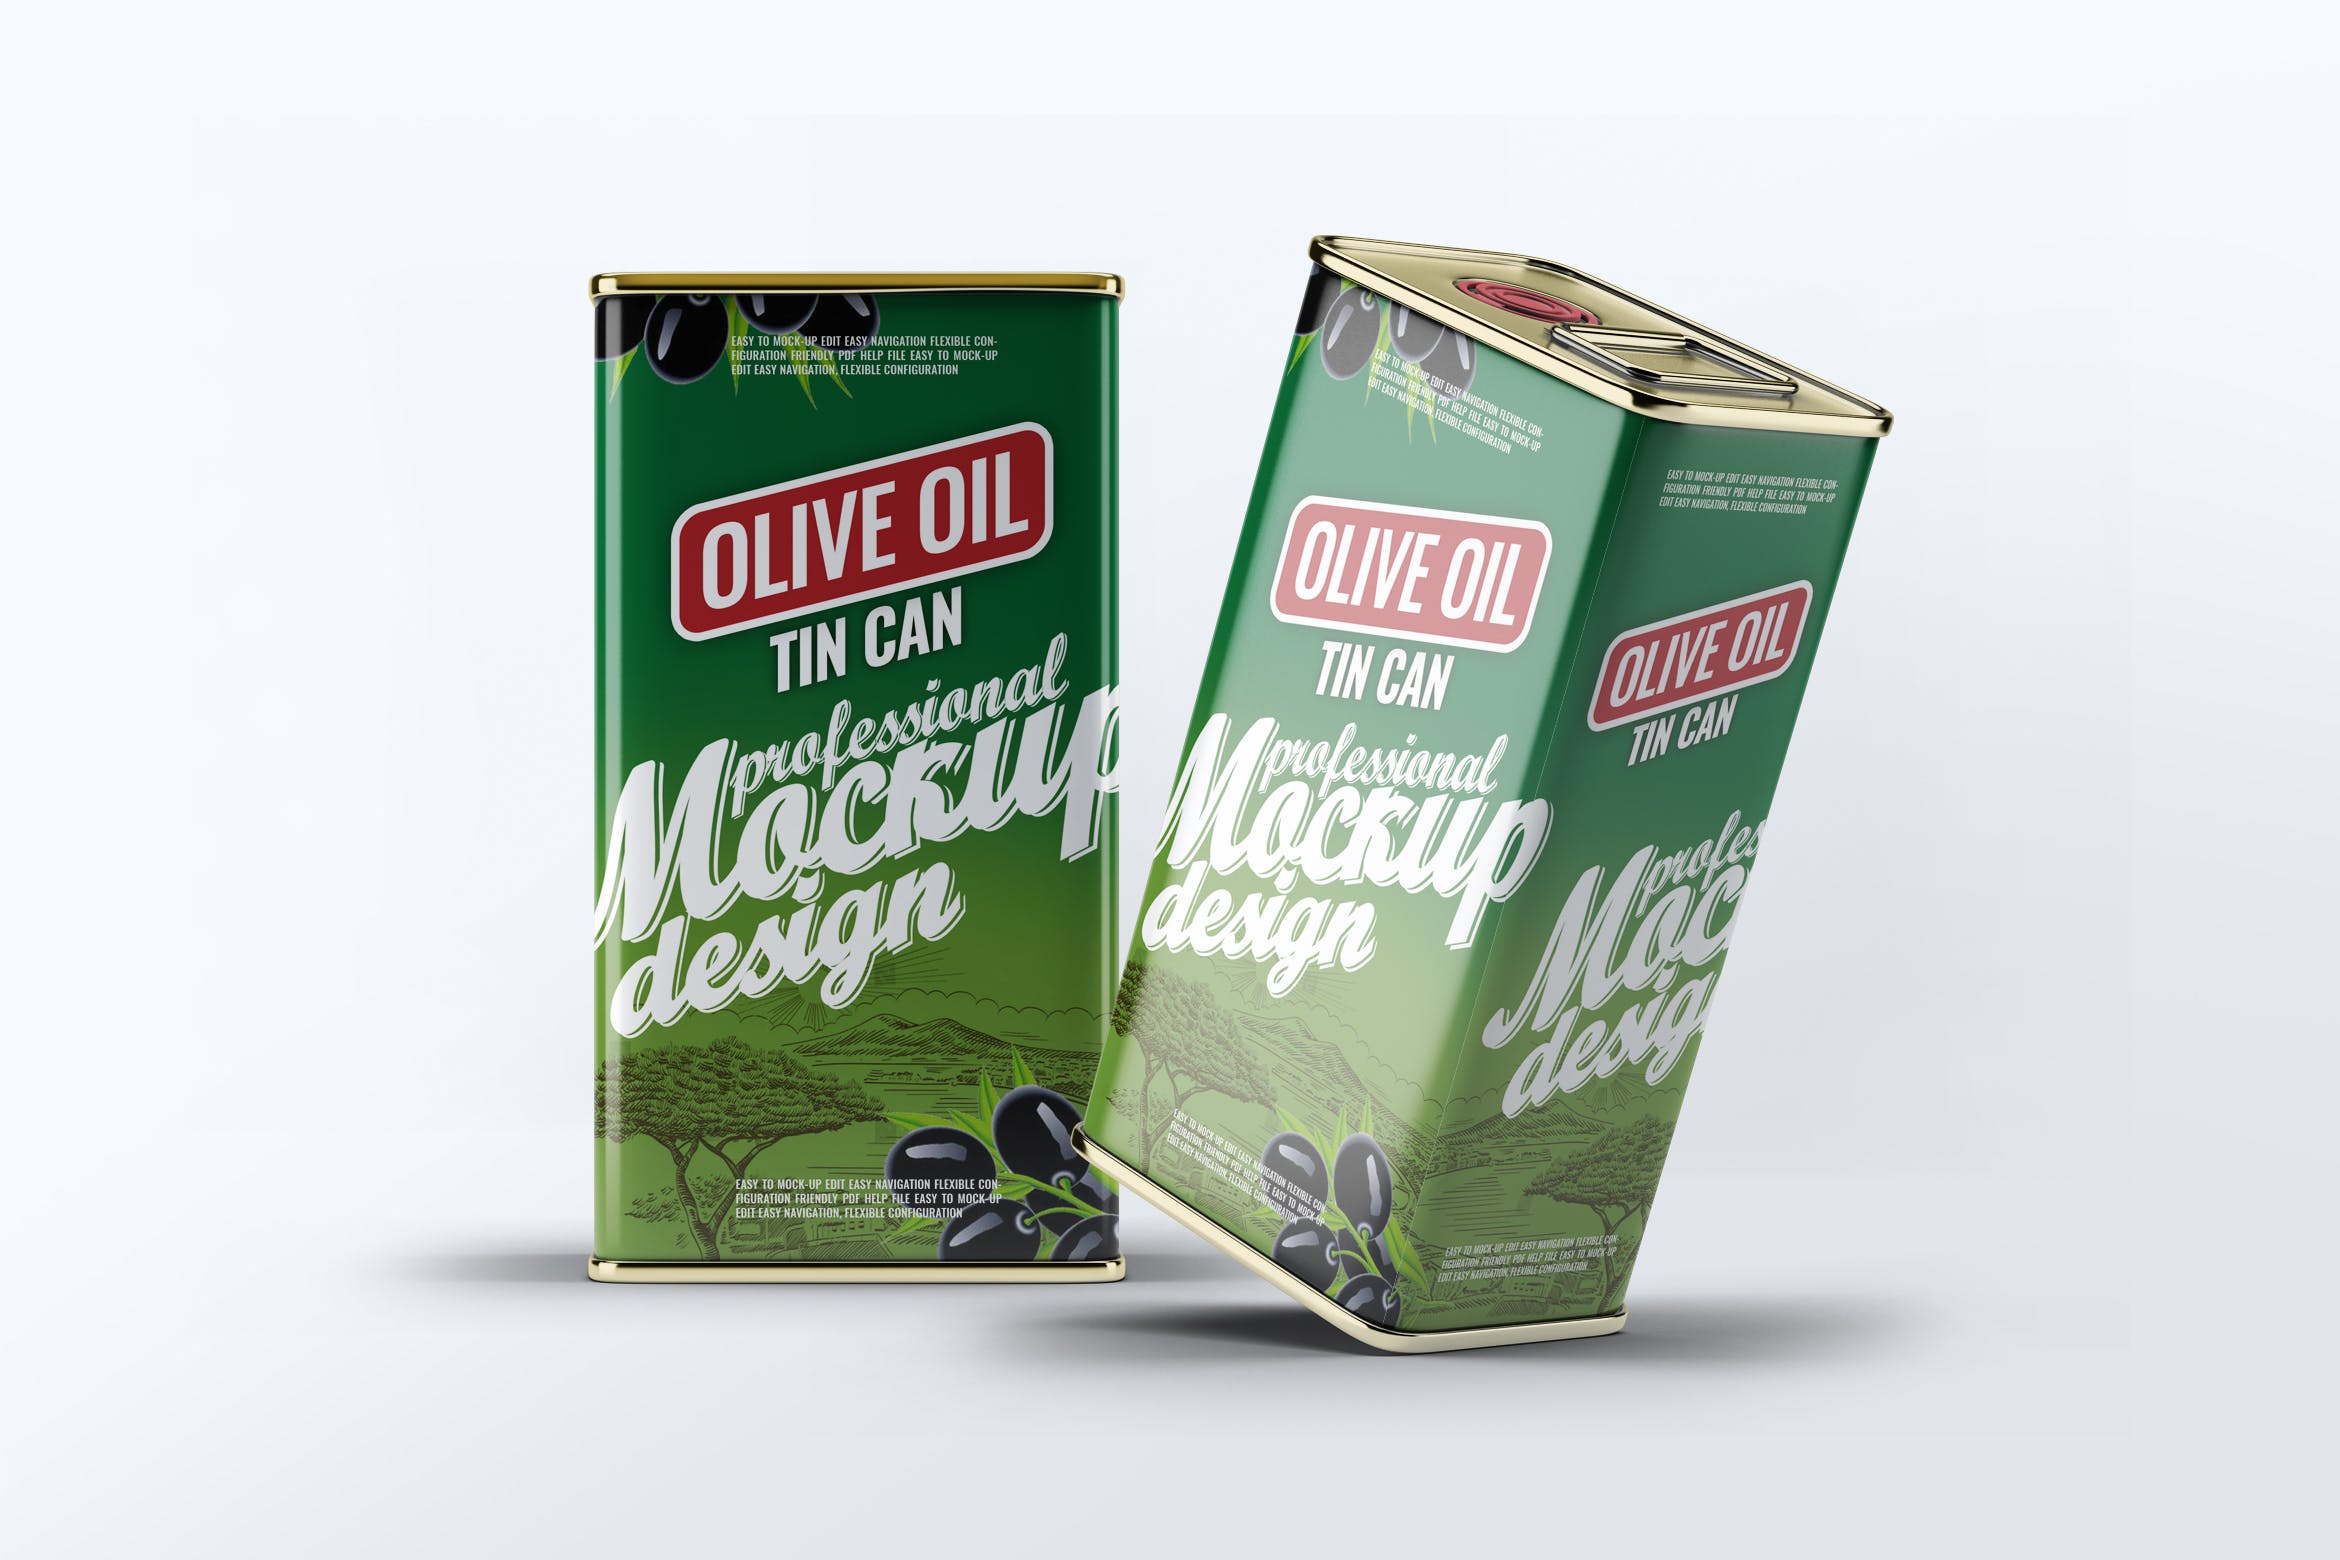 橄榄油罐头包装外观设计效果图第一素材精选模板 Tin Can Olive Oil Mock-Up插图